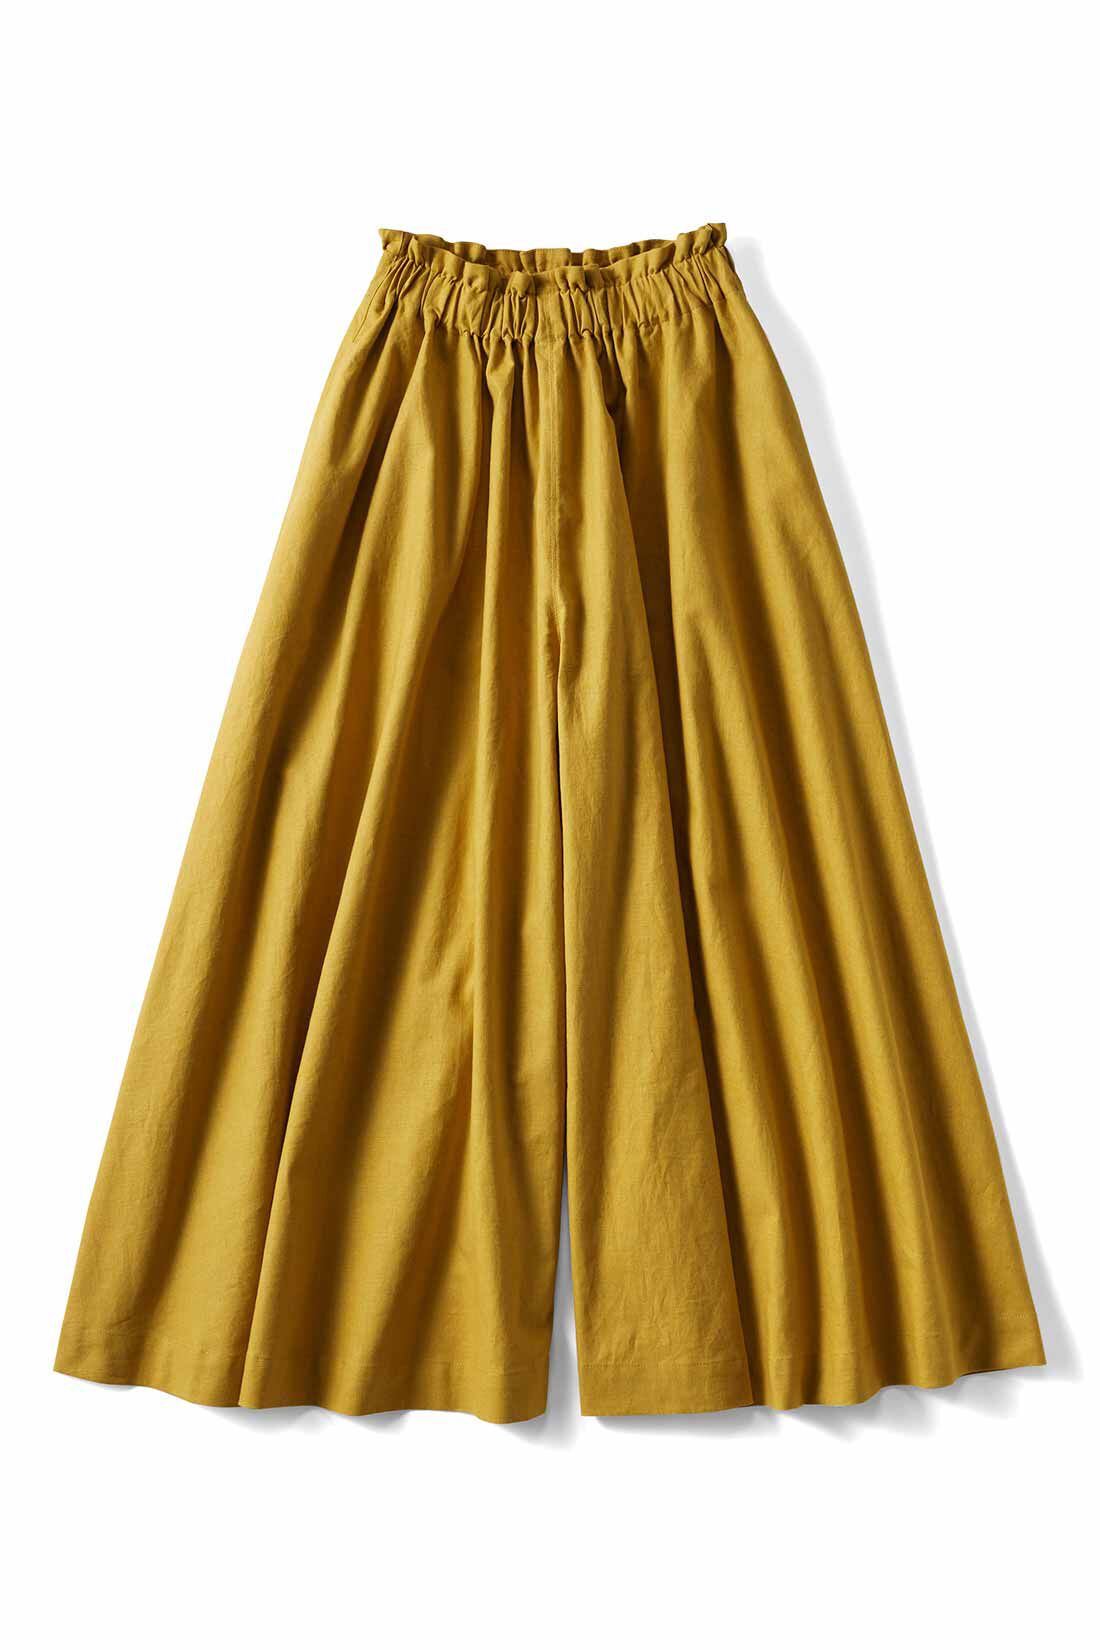 シロップ．|スカートみたいな ちょい厚コットンリネンのボリュームガウチョパンツ〈マスタードイエロー〉